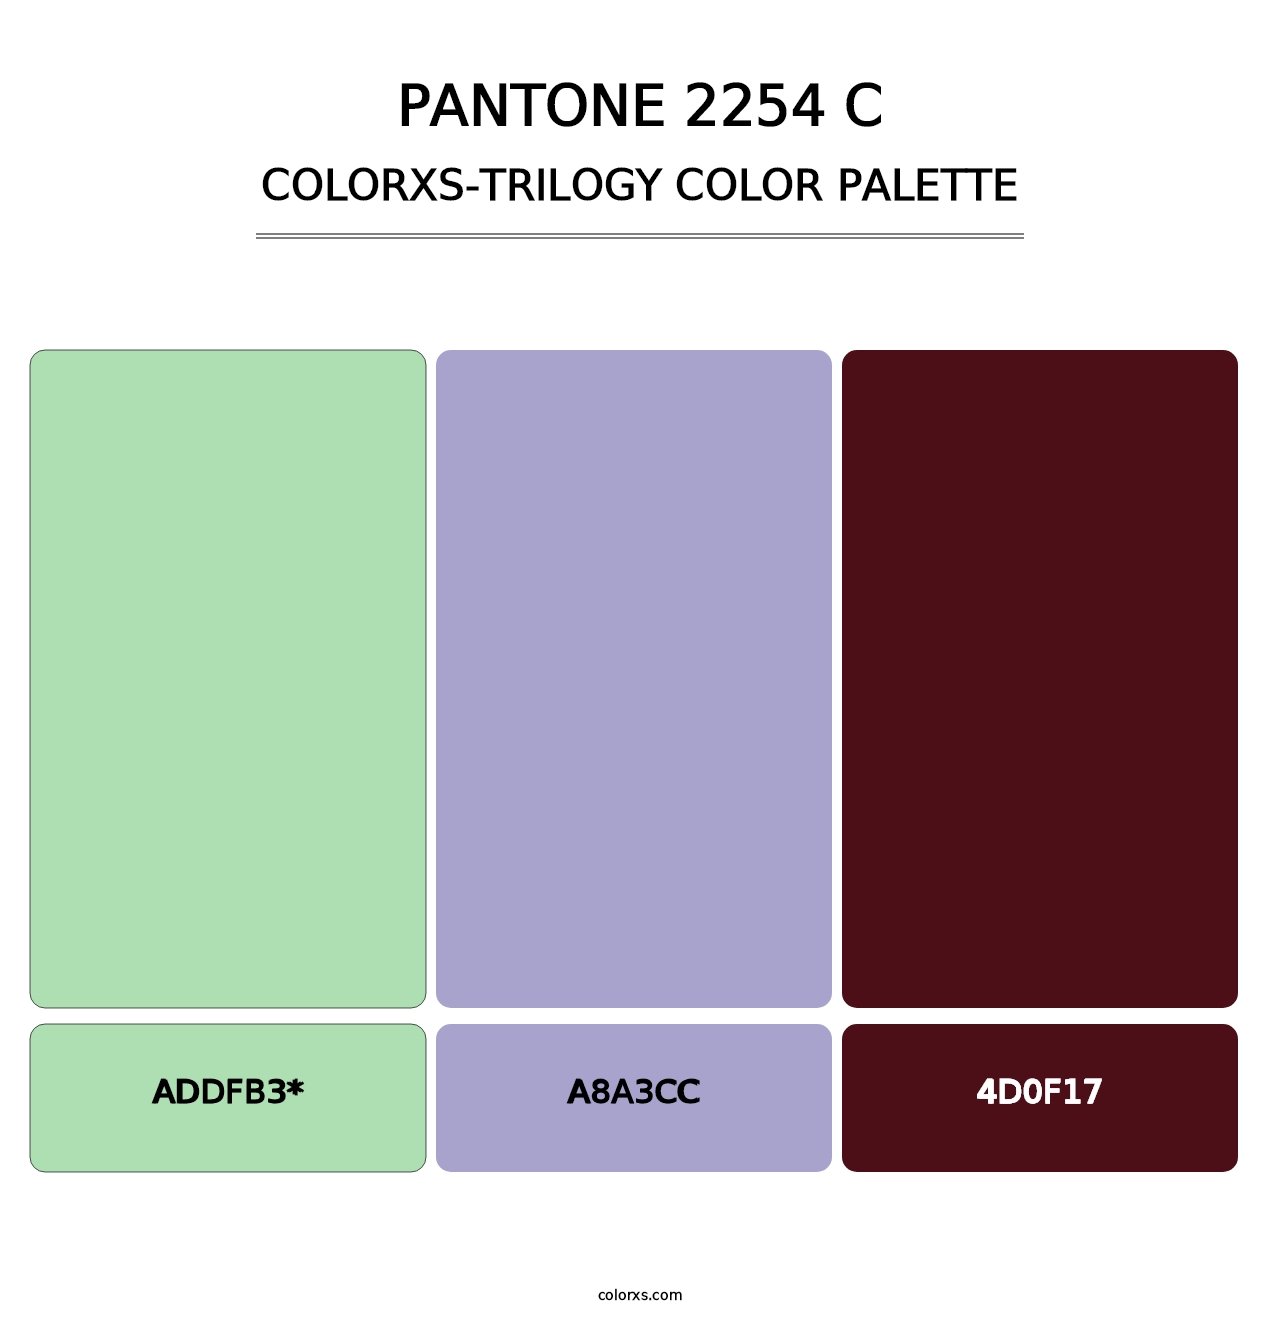 PANTONE 2254 C - Colorxs Trilogy Palette